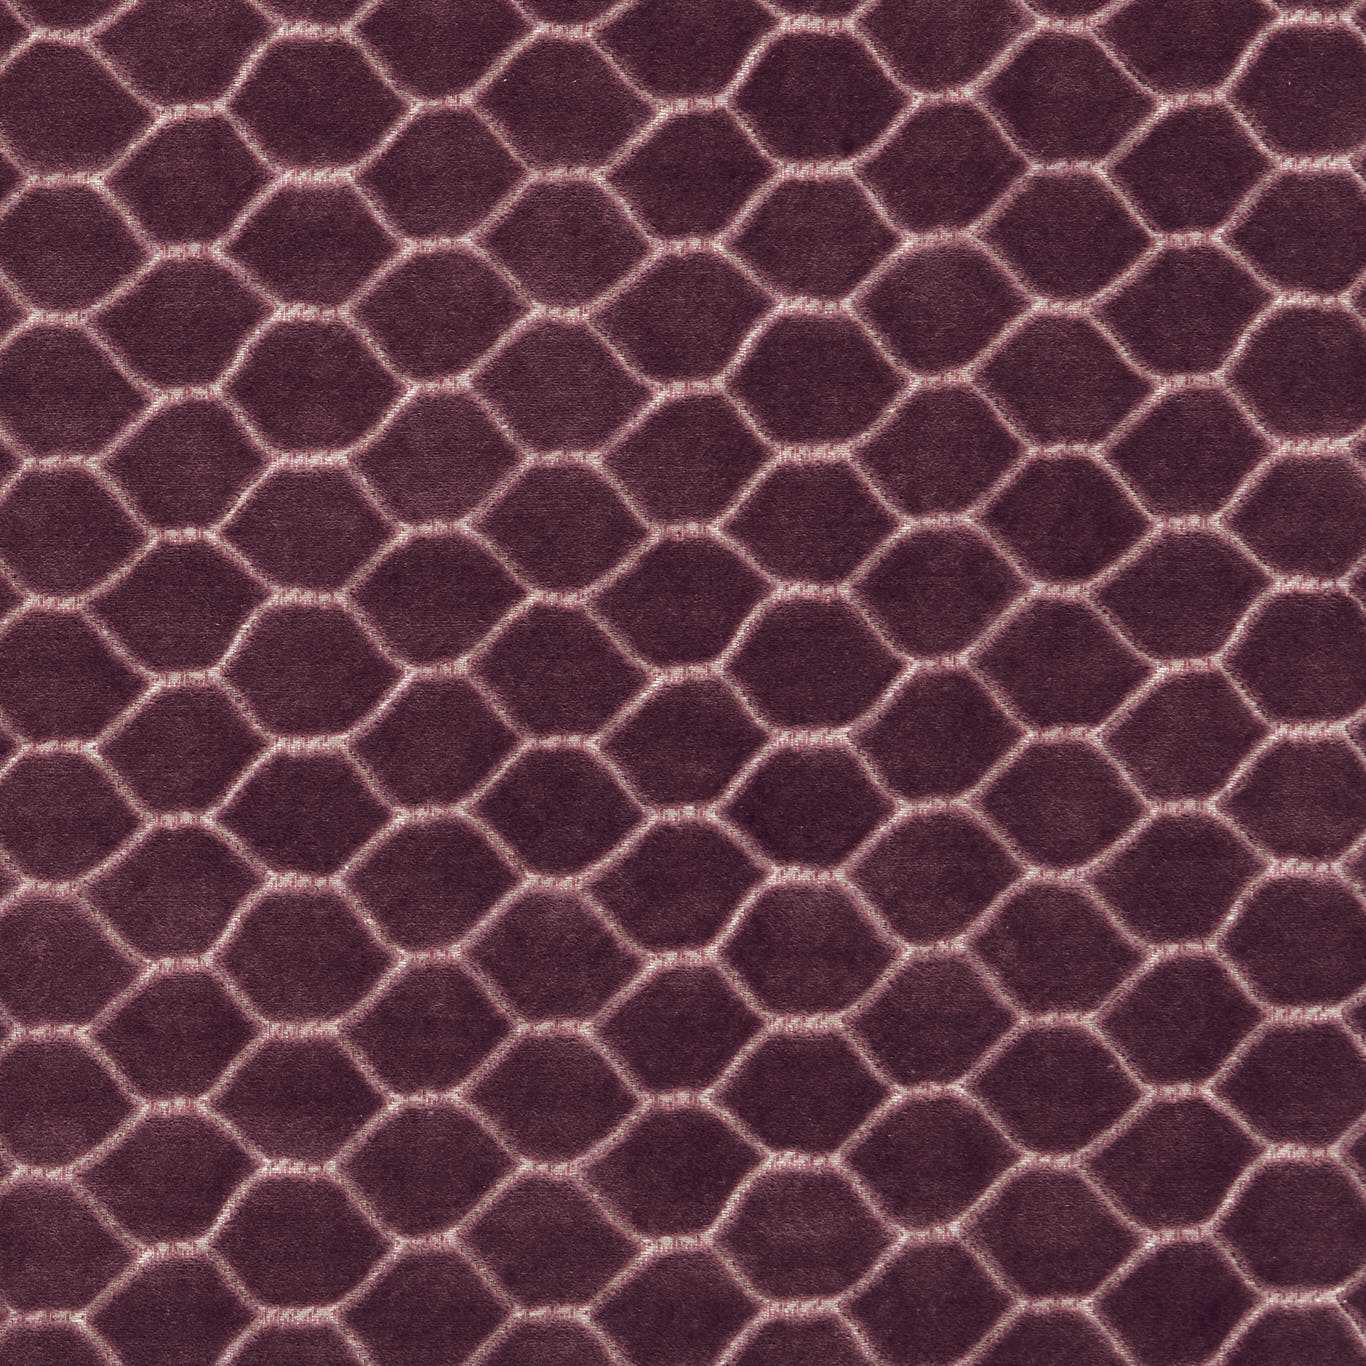 Sanderson - Faraday Velvet Plum Fabric - DGDV237417 - Morris Wallpaper